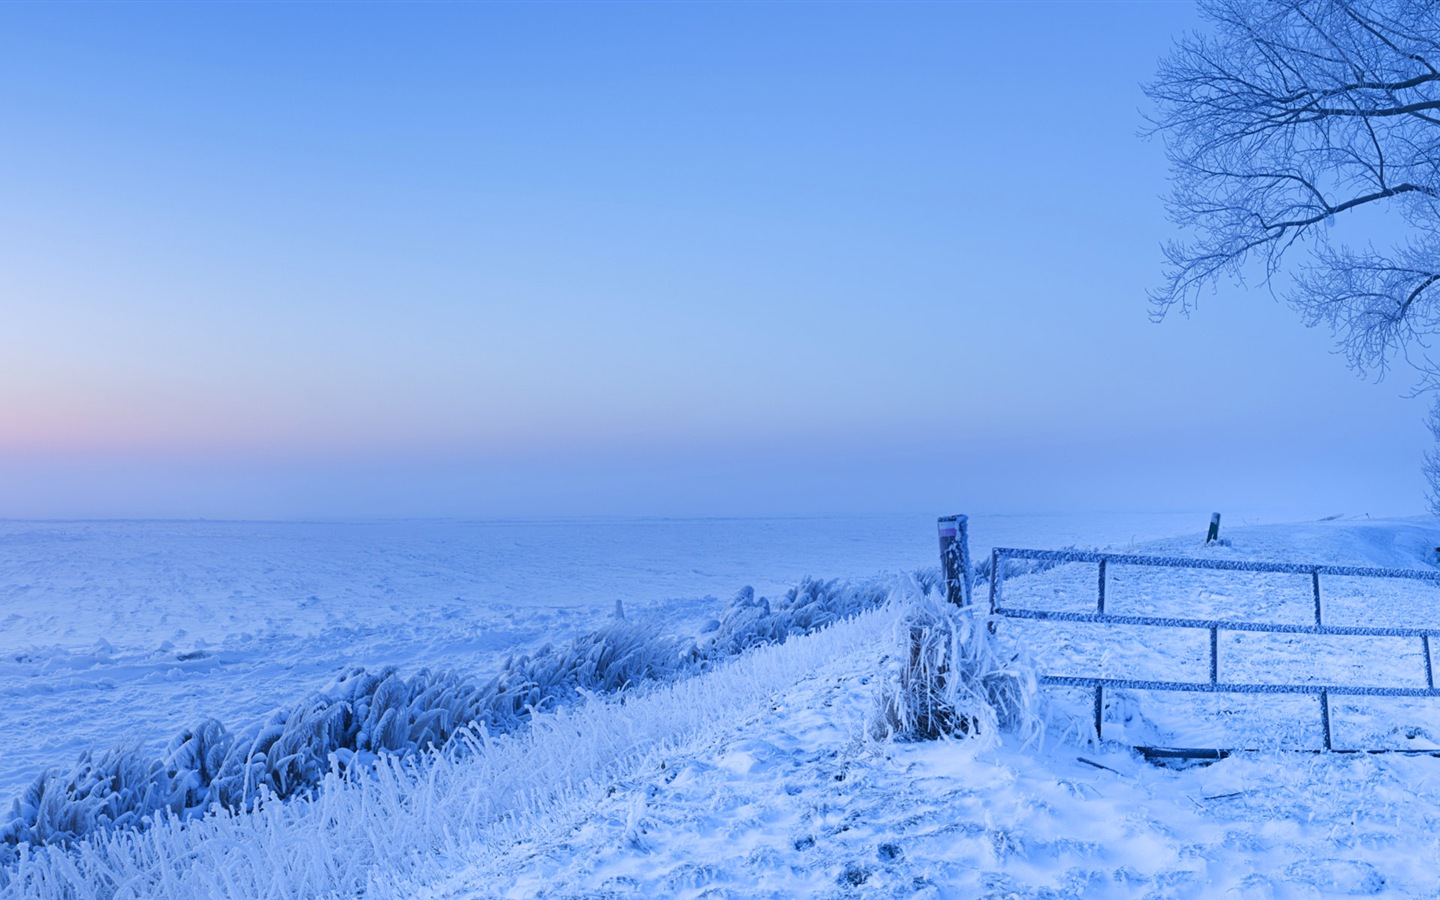 Belle neige froide d'hiver, de Windows 8 fonds d'écran widescreen panoramique #2 - 1440x900